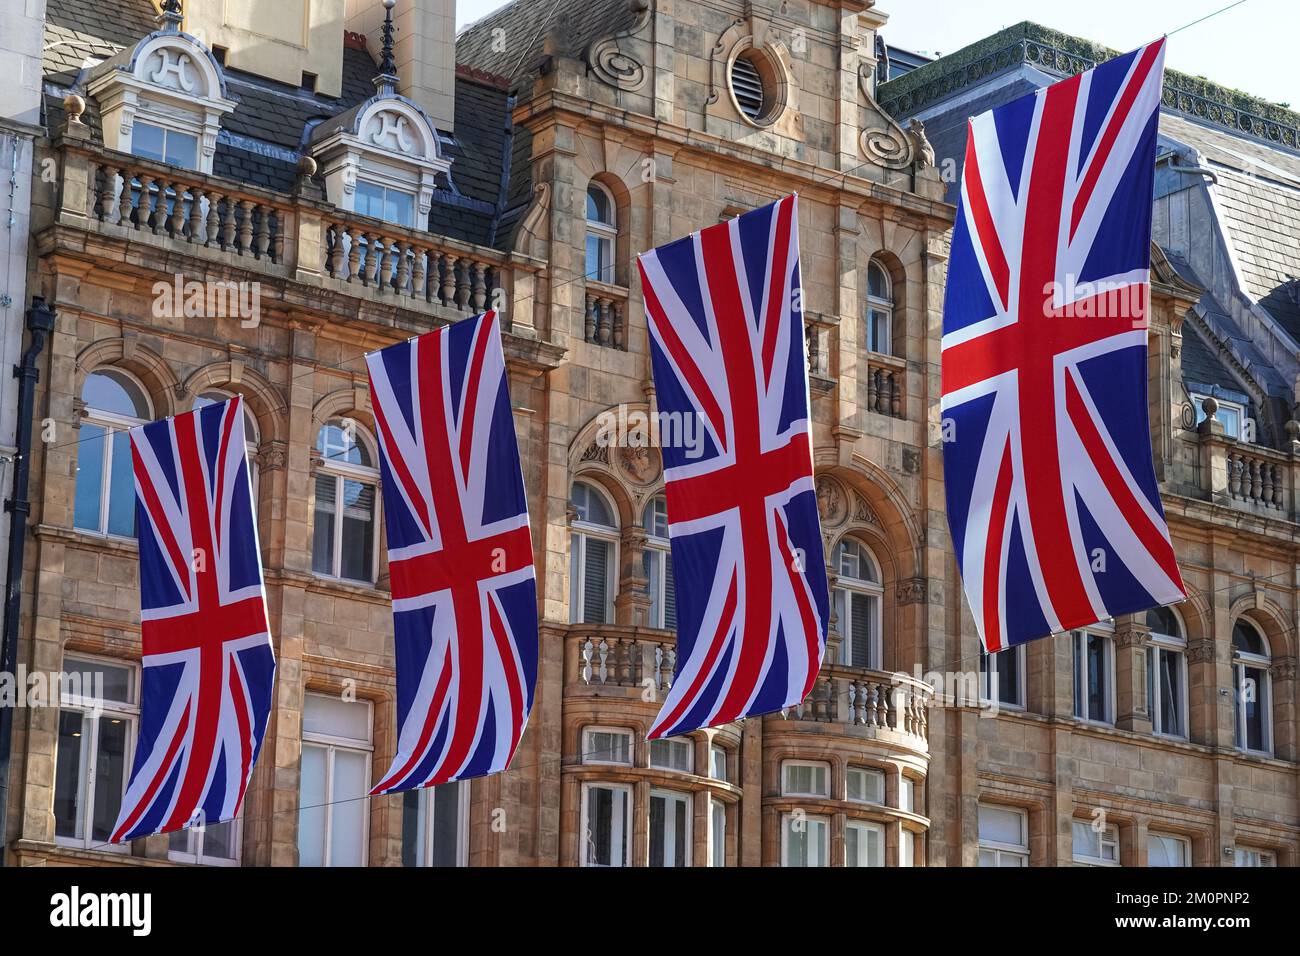 Union Jack, British flag bunting above street in London, England United Kingdom UK Stock Photo